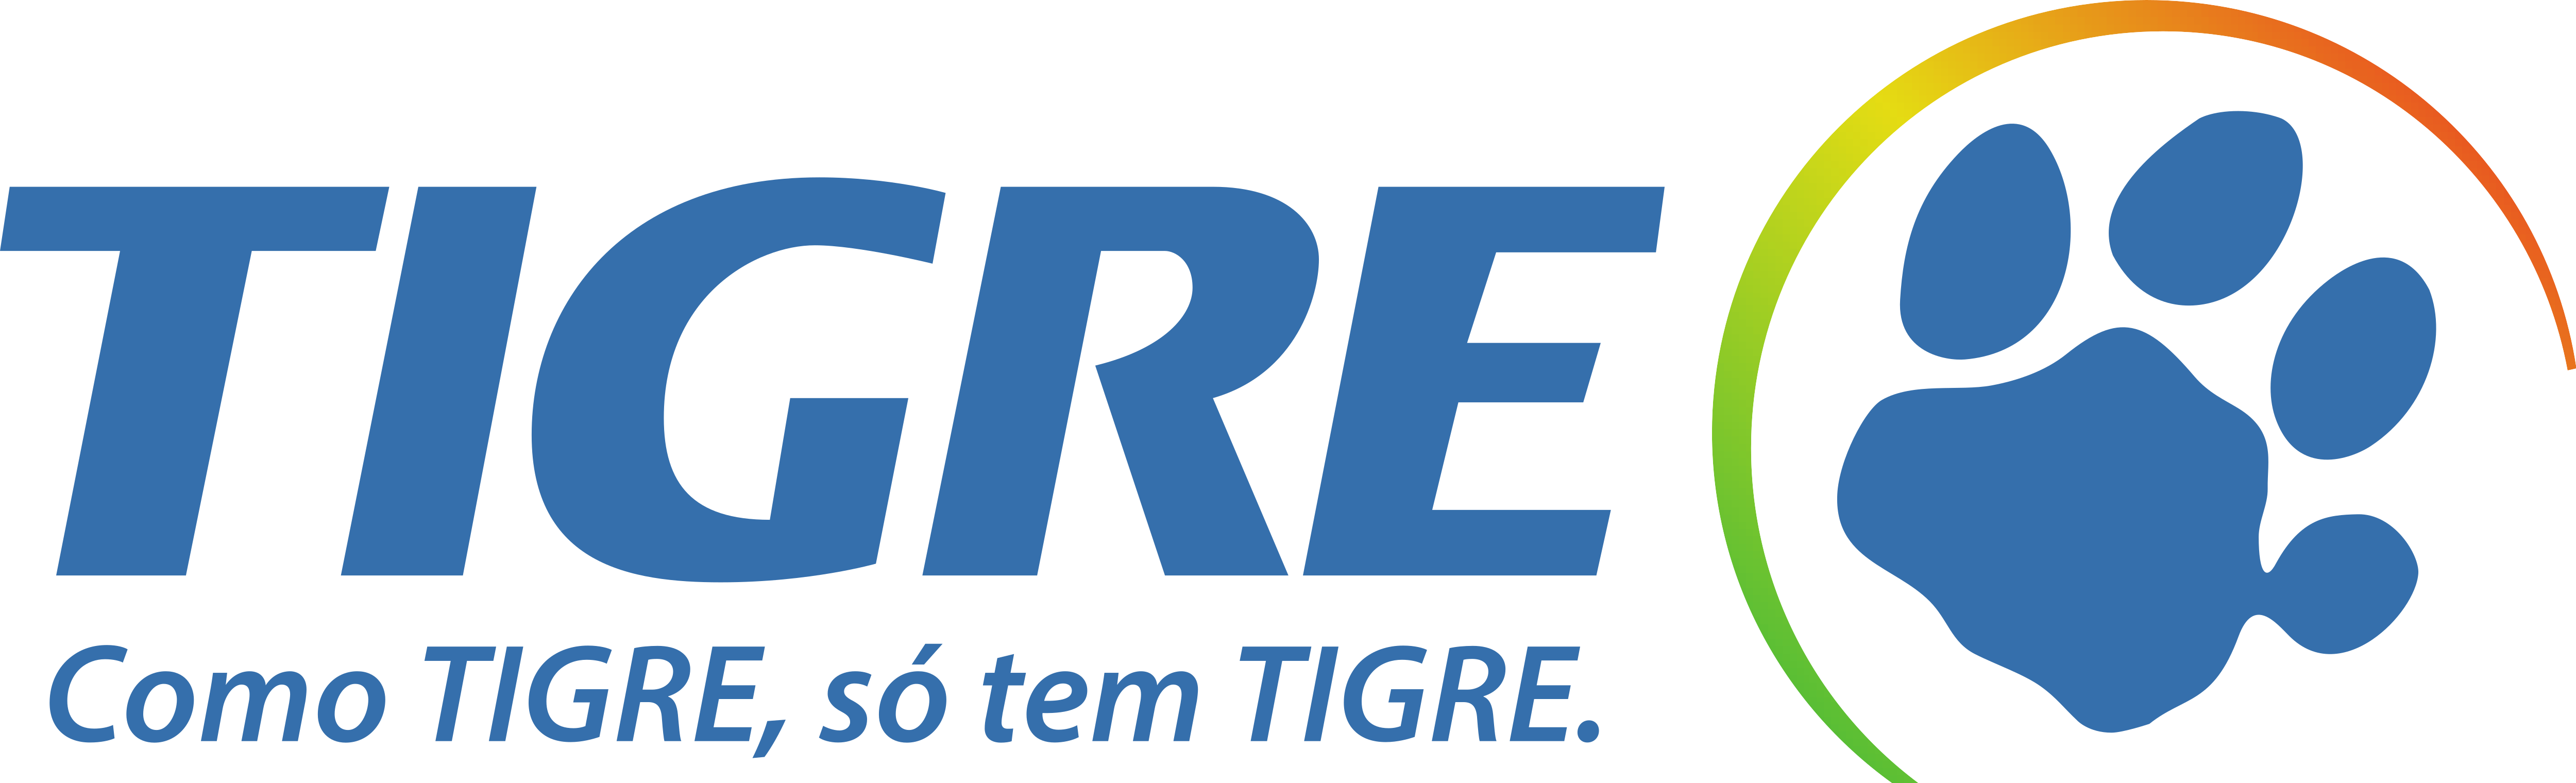 Tigre-logo 28 De Setembro De 2016 301 Kb 5000 × - Tigre Logo (5000x1520), Png Download